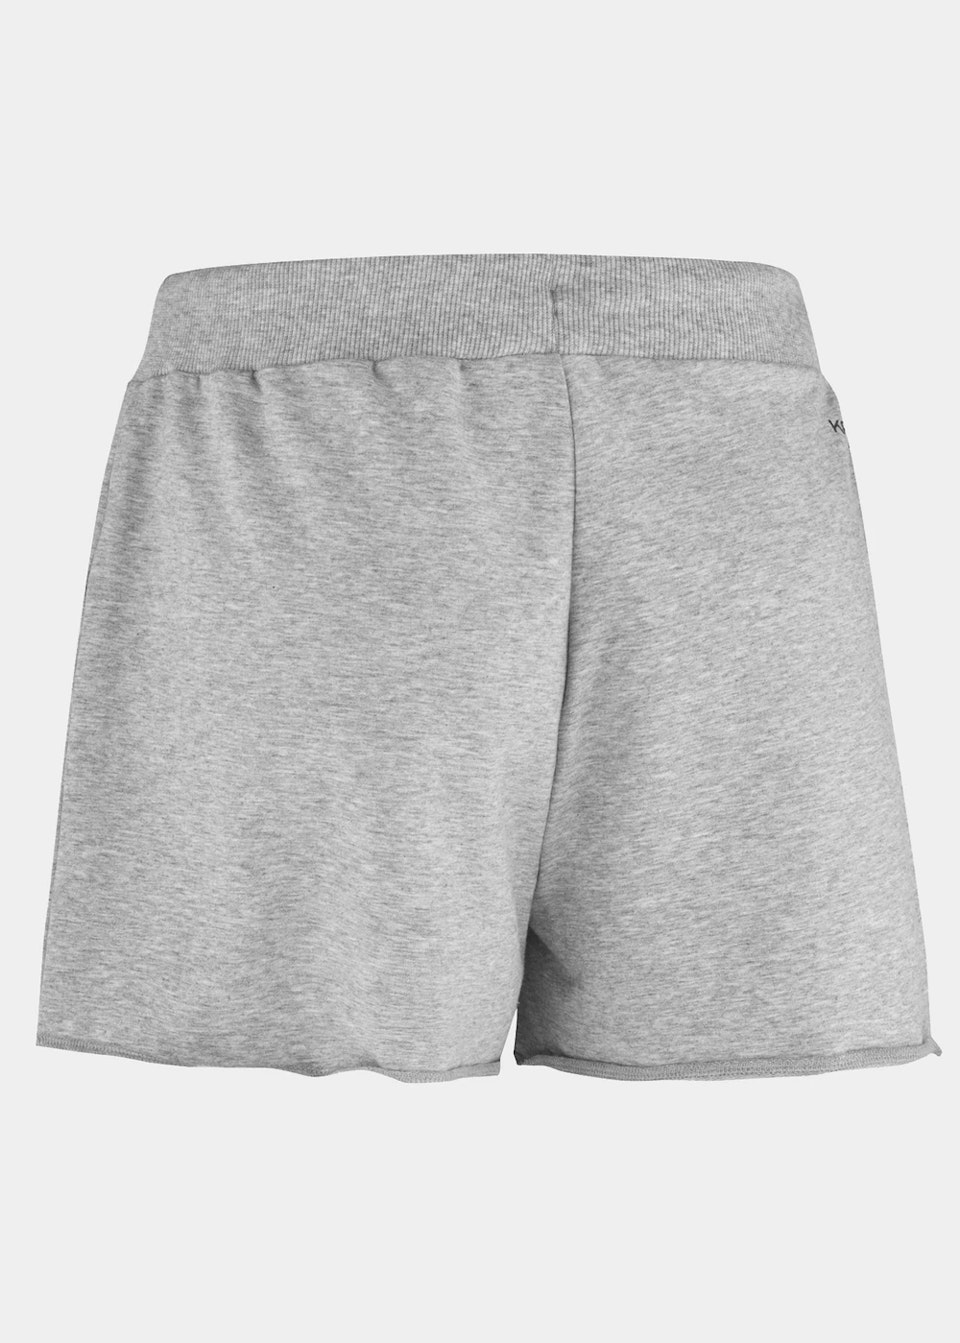 Kari Traa - Traa Shorts - Grey